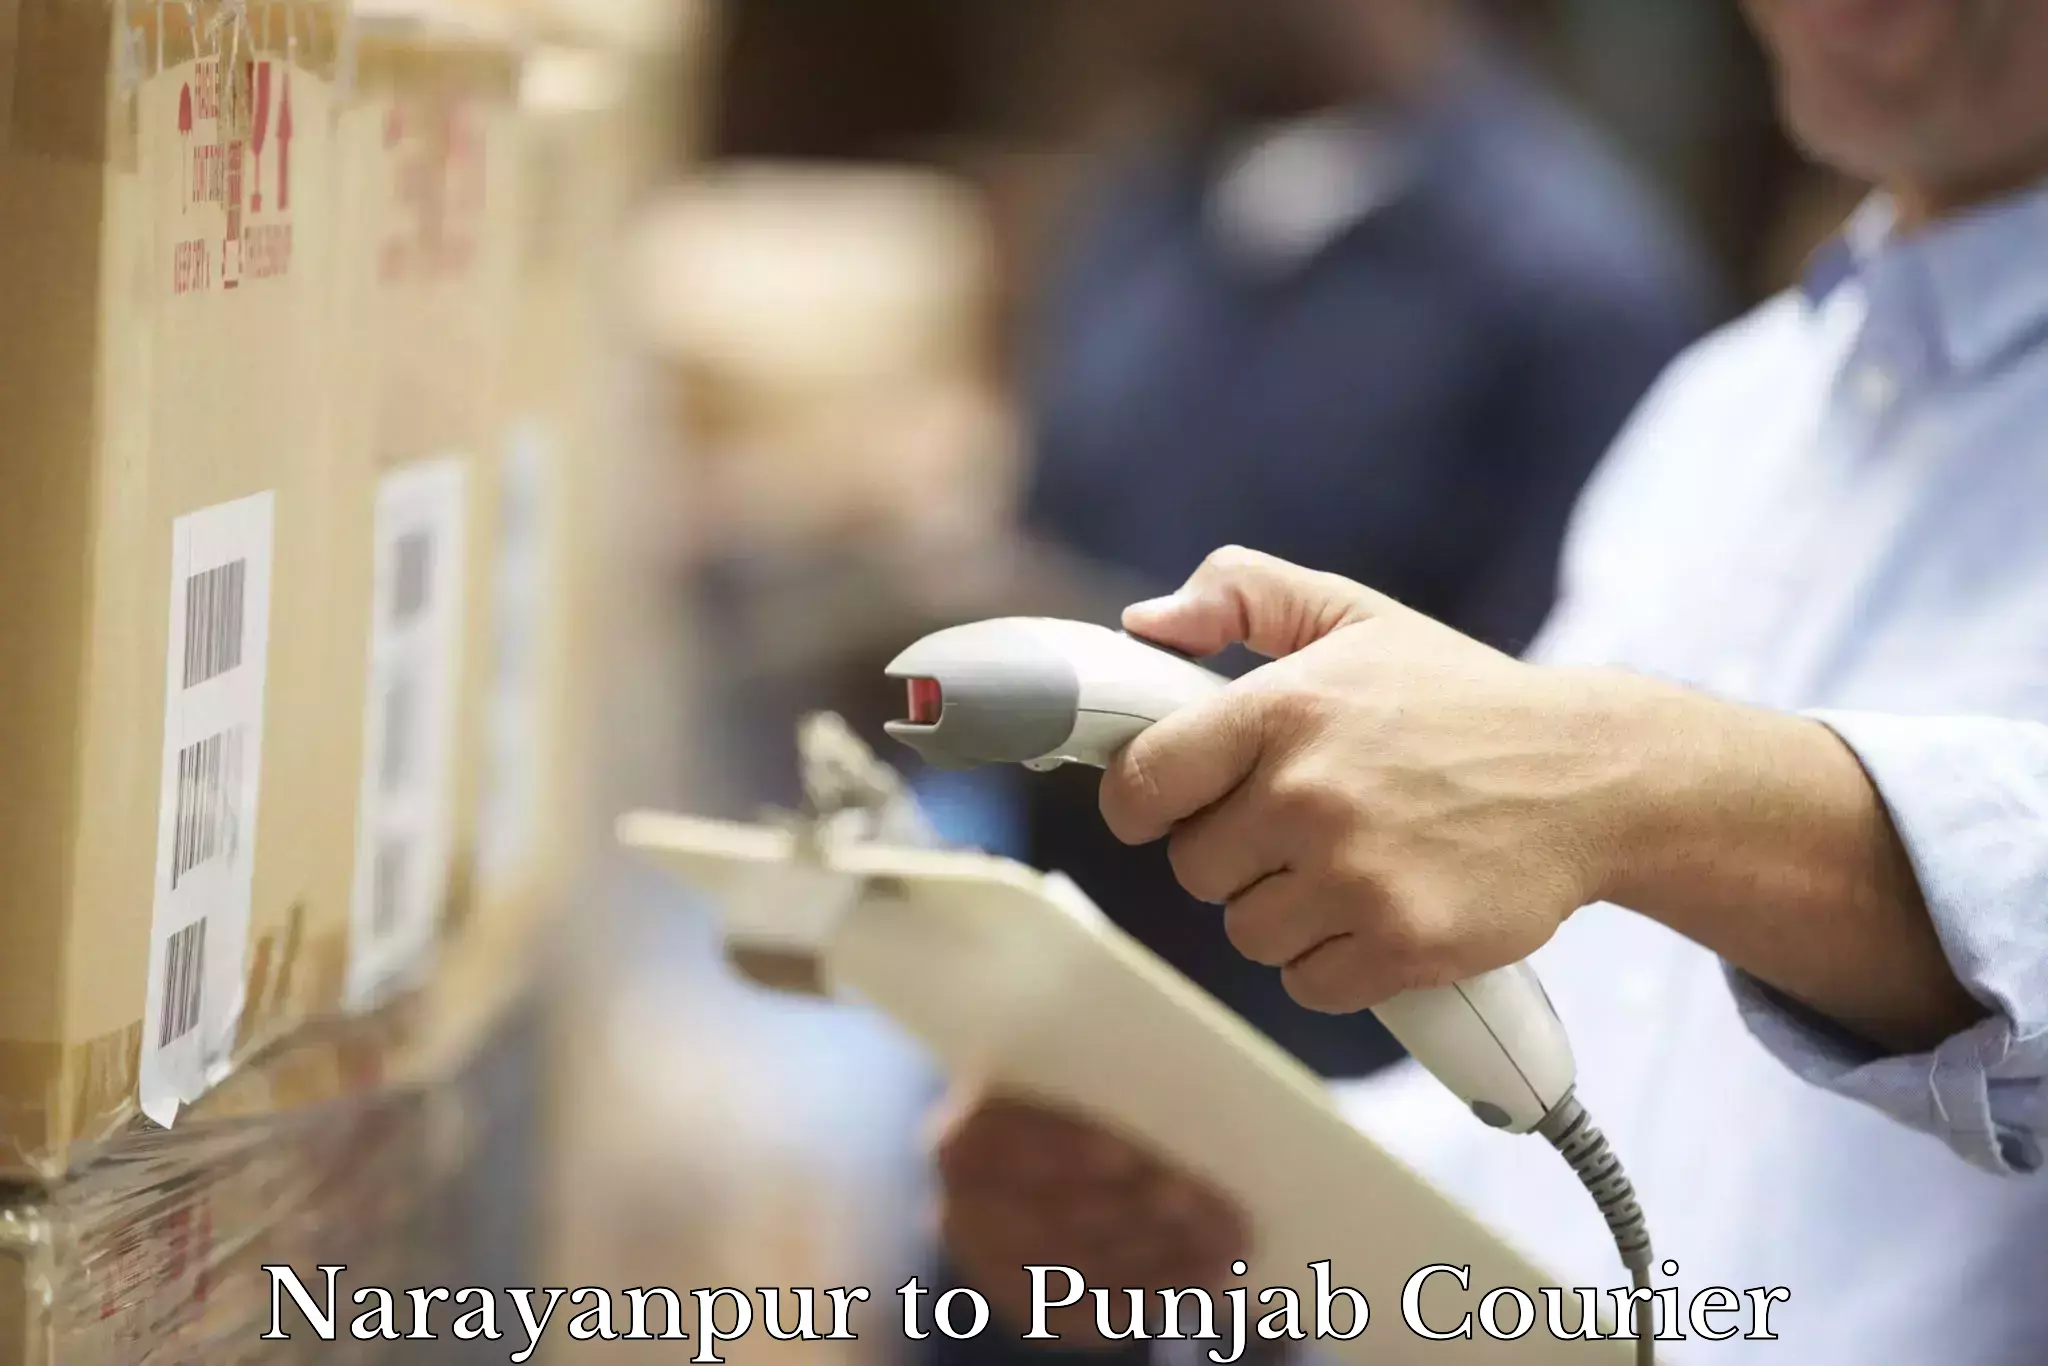 Efficient parcel service Narayanpur to Sirhind Fatehgarh